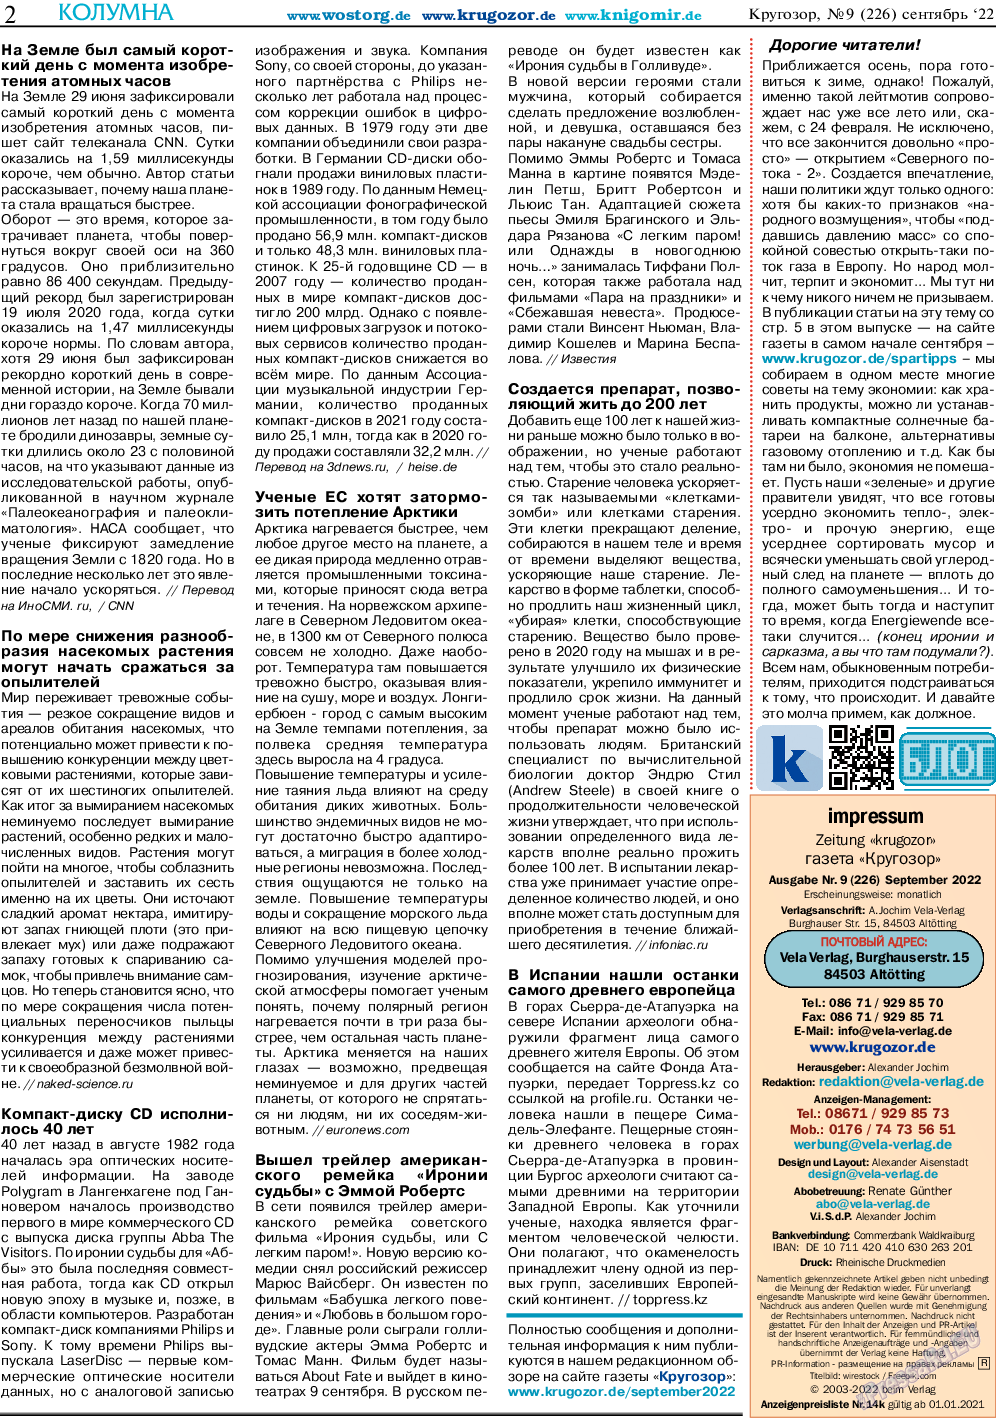 Кругозор, газета. 2022 №9 стр.2